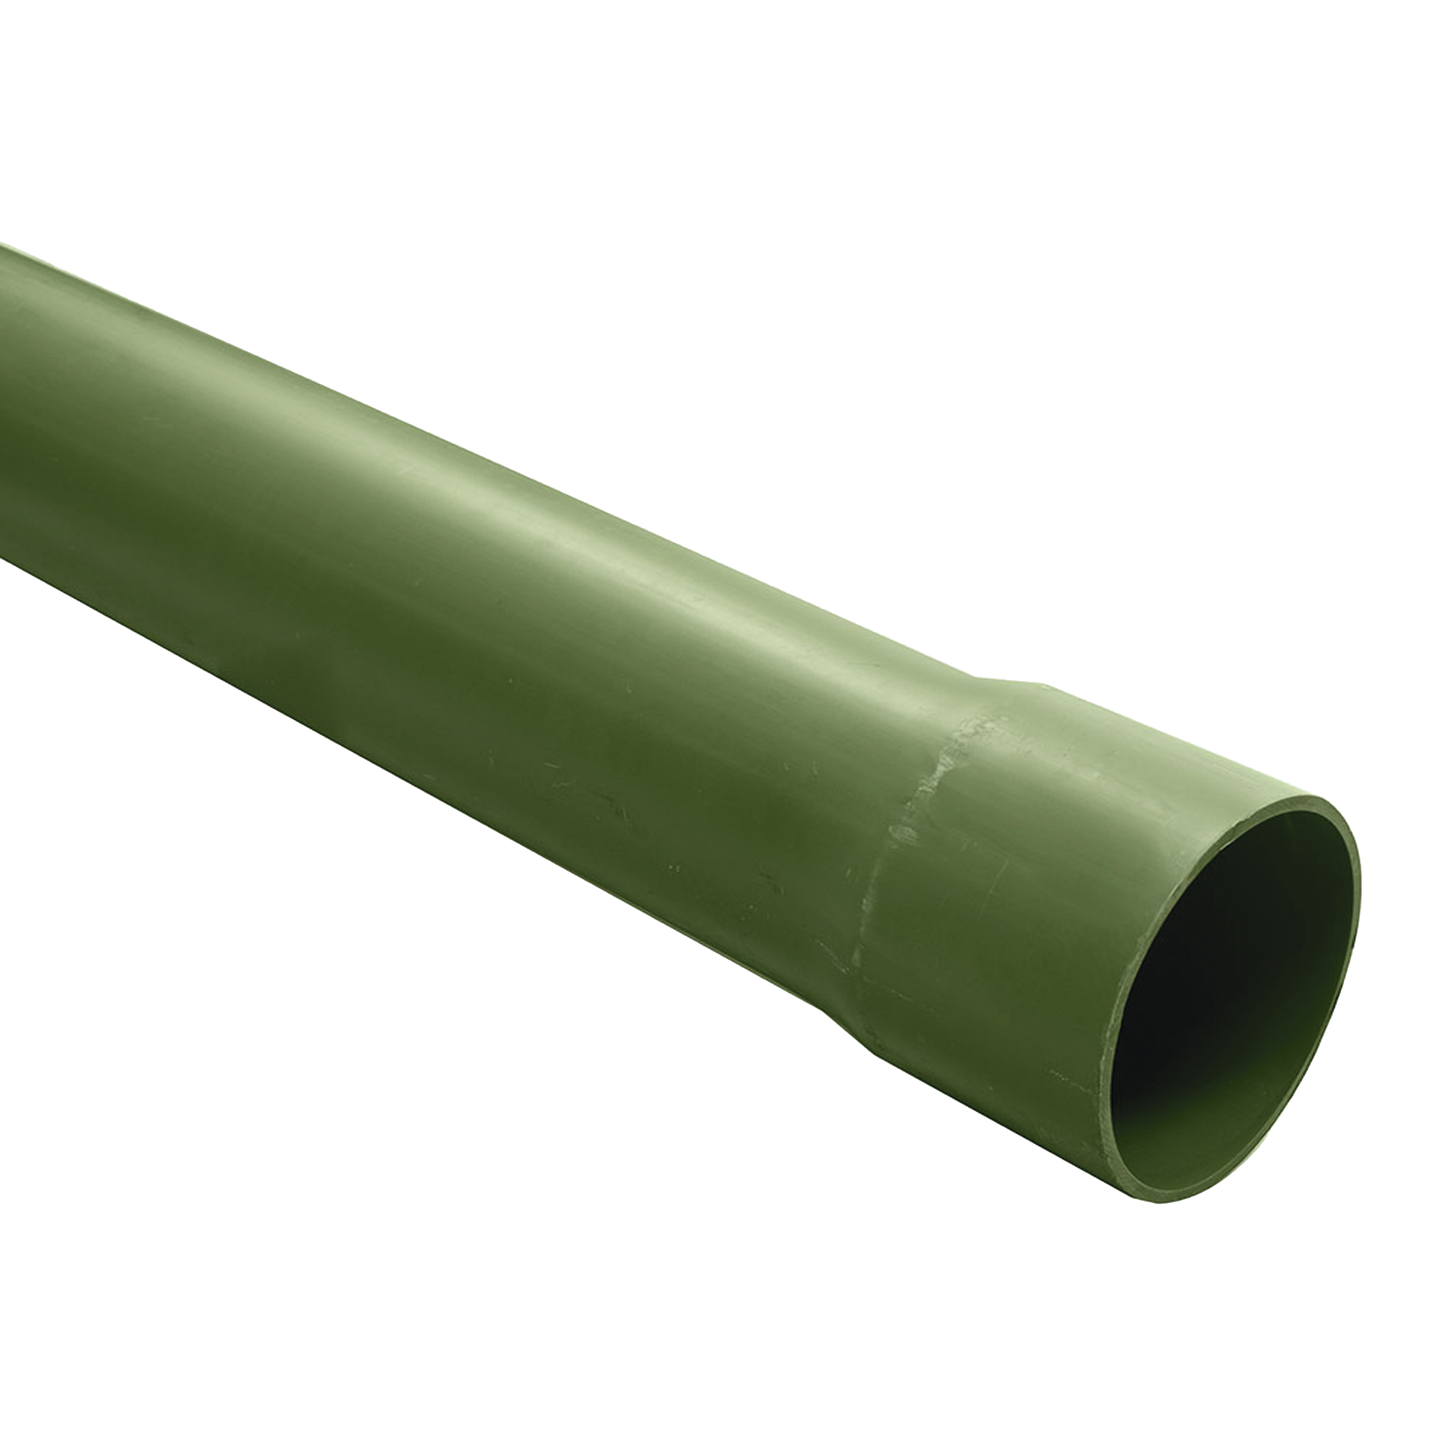 Tubo PVC Conduit pesado de 1 1/4" (32 mm) de 3 m.